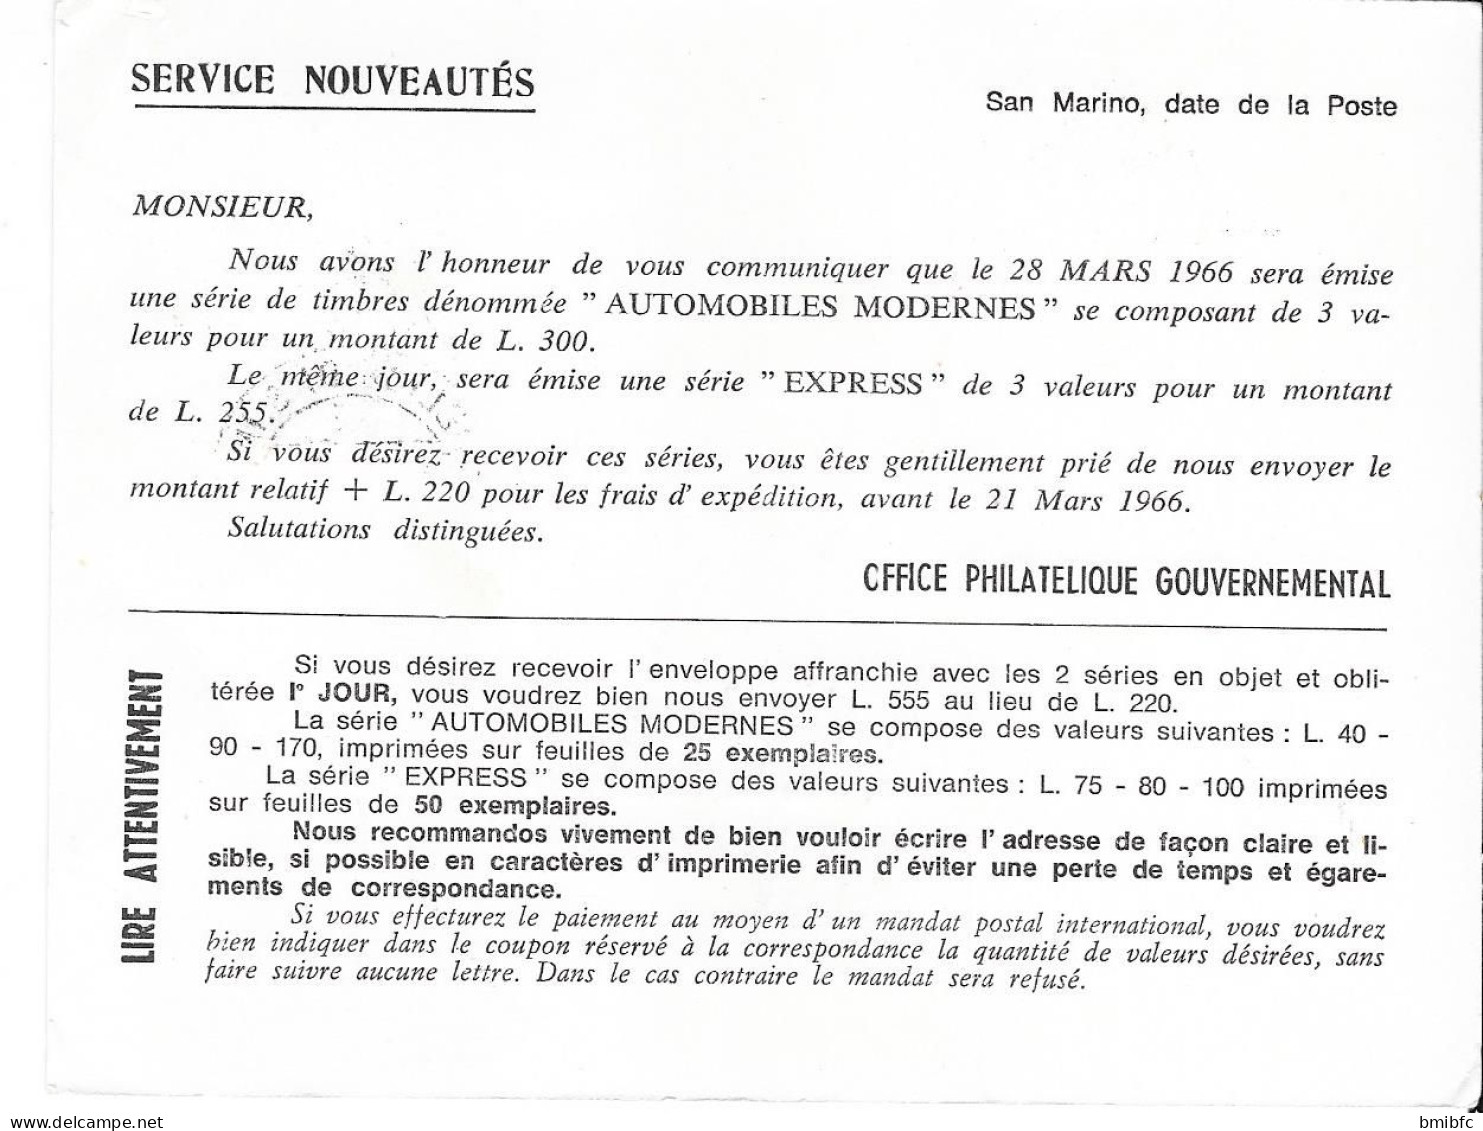 1966 - REPUBLICA DI SAN MARINO - UFFICIO FILATELICO GOVERNATIVO (Poste Aérienne) - Storia Postale